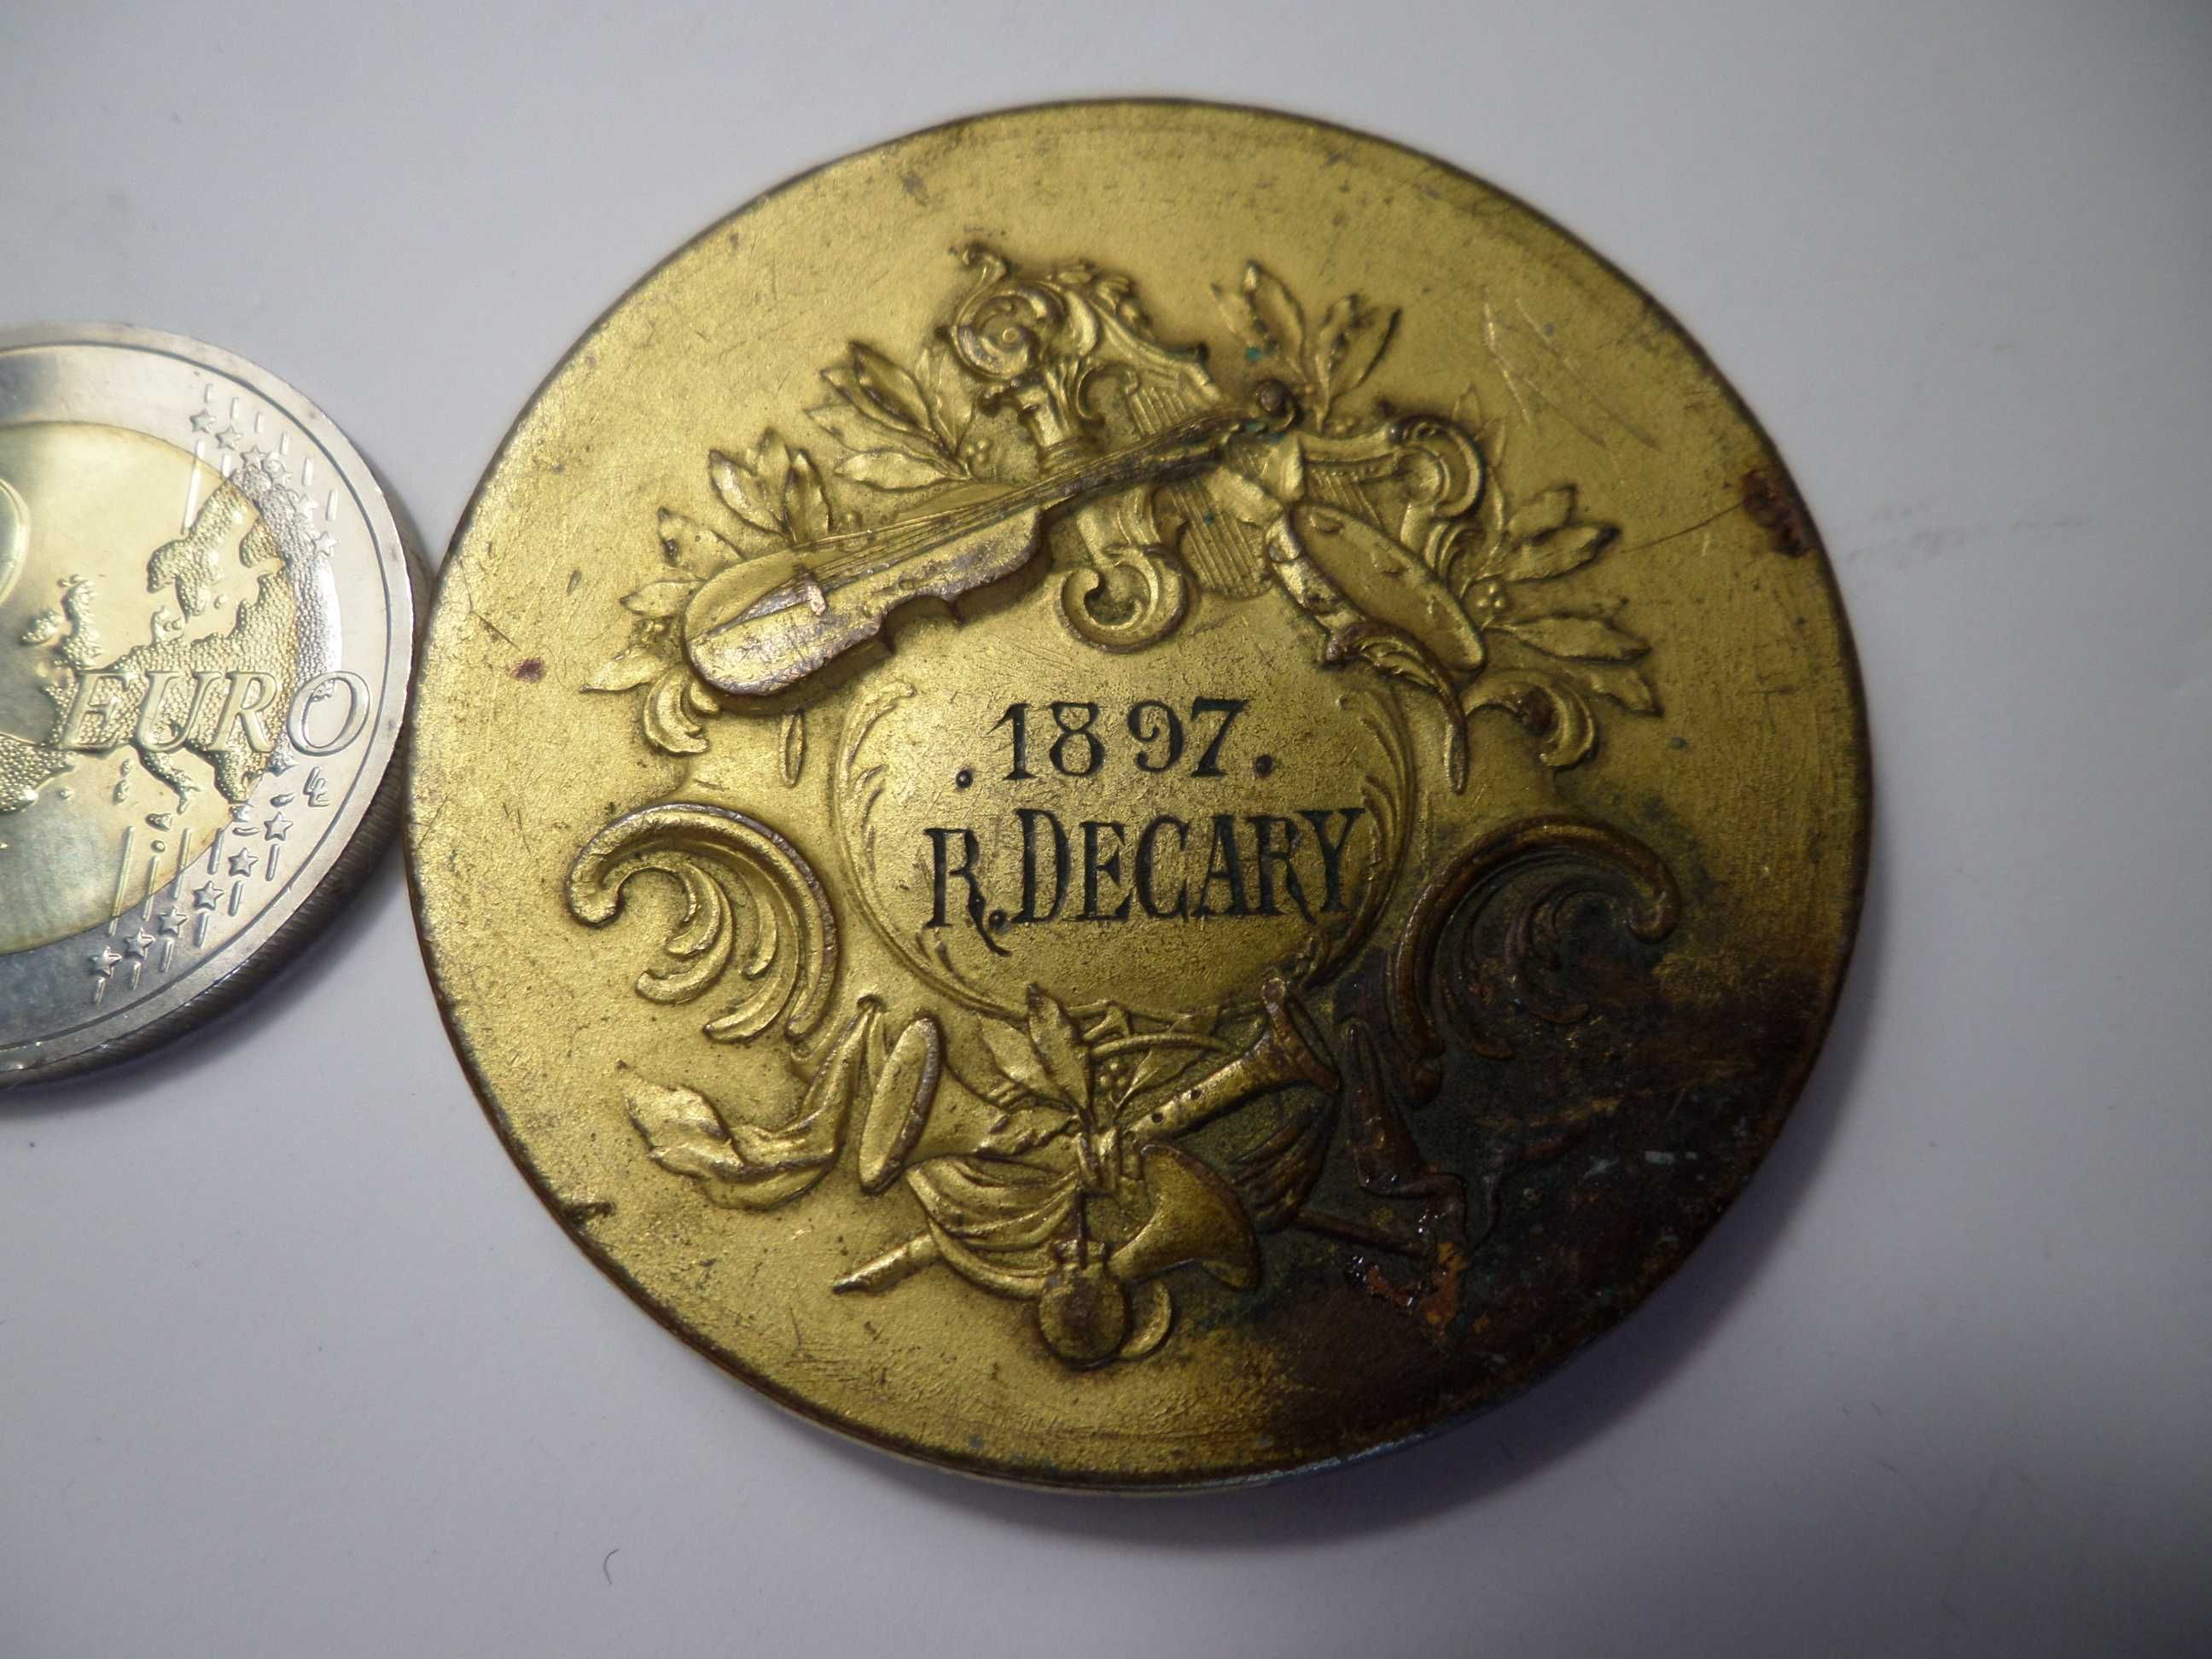 Medalha 'La Musique' R. Decary 1897